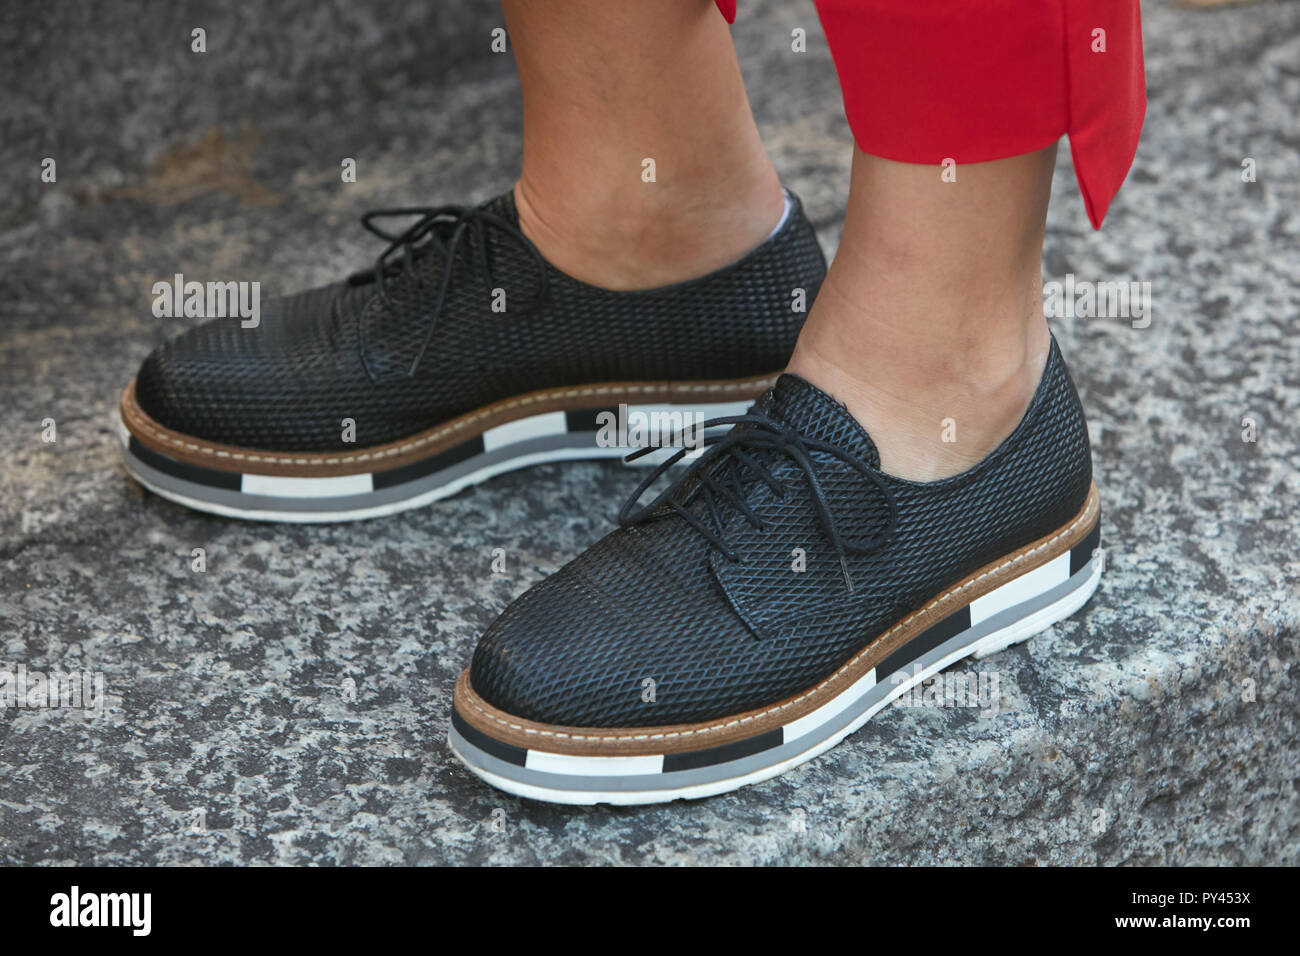 Milán, Italia - 23 de septiembre de 2018: Mujer con zapatos negros con suela blanco y